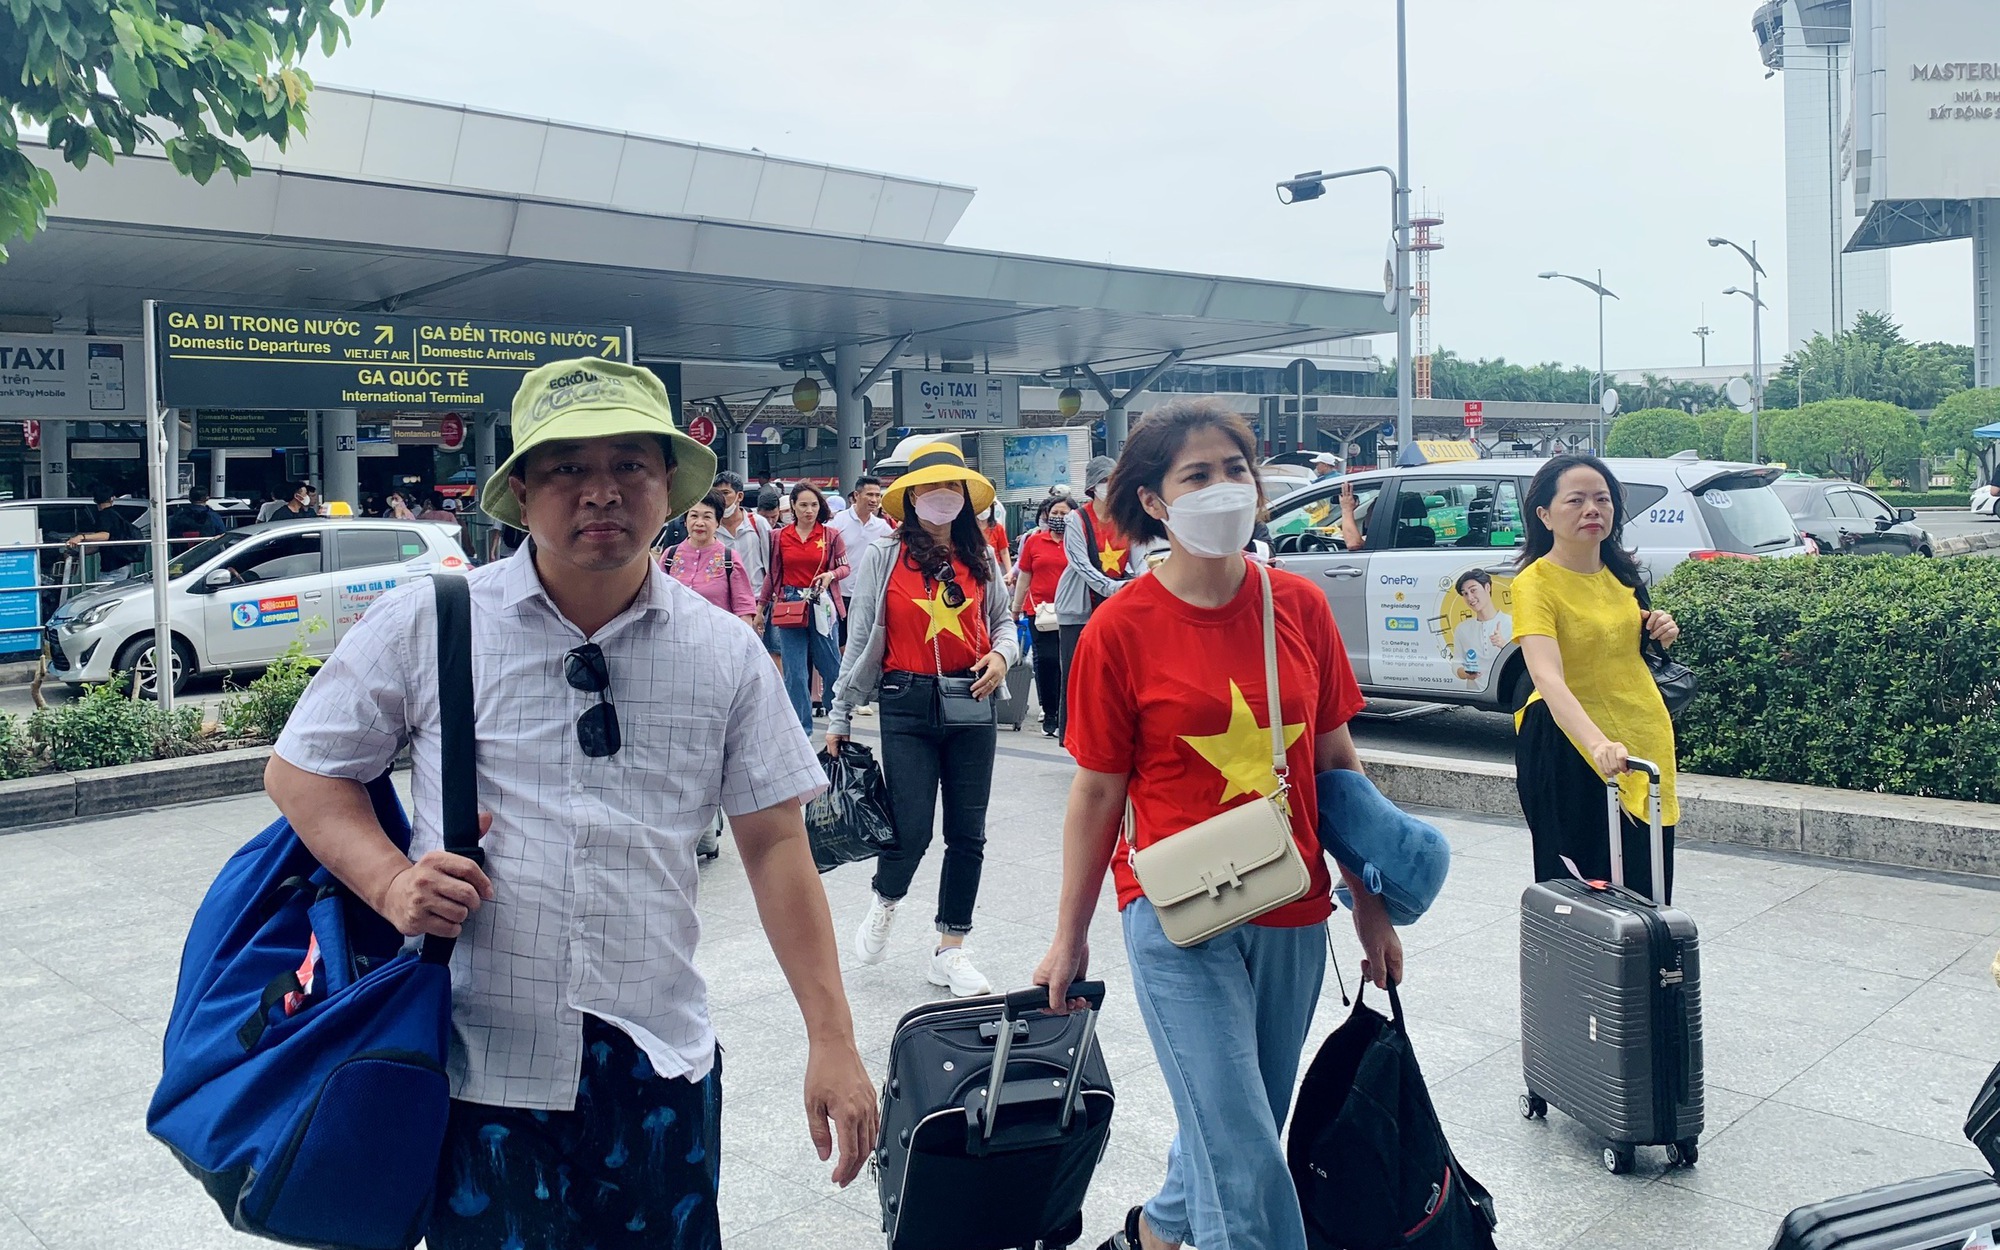 Siết việc tuân thủ an toàn bay tại sân bay Tân Sơn Nhất trong cao điểm hè